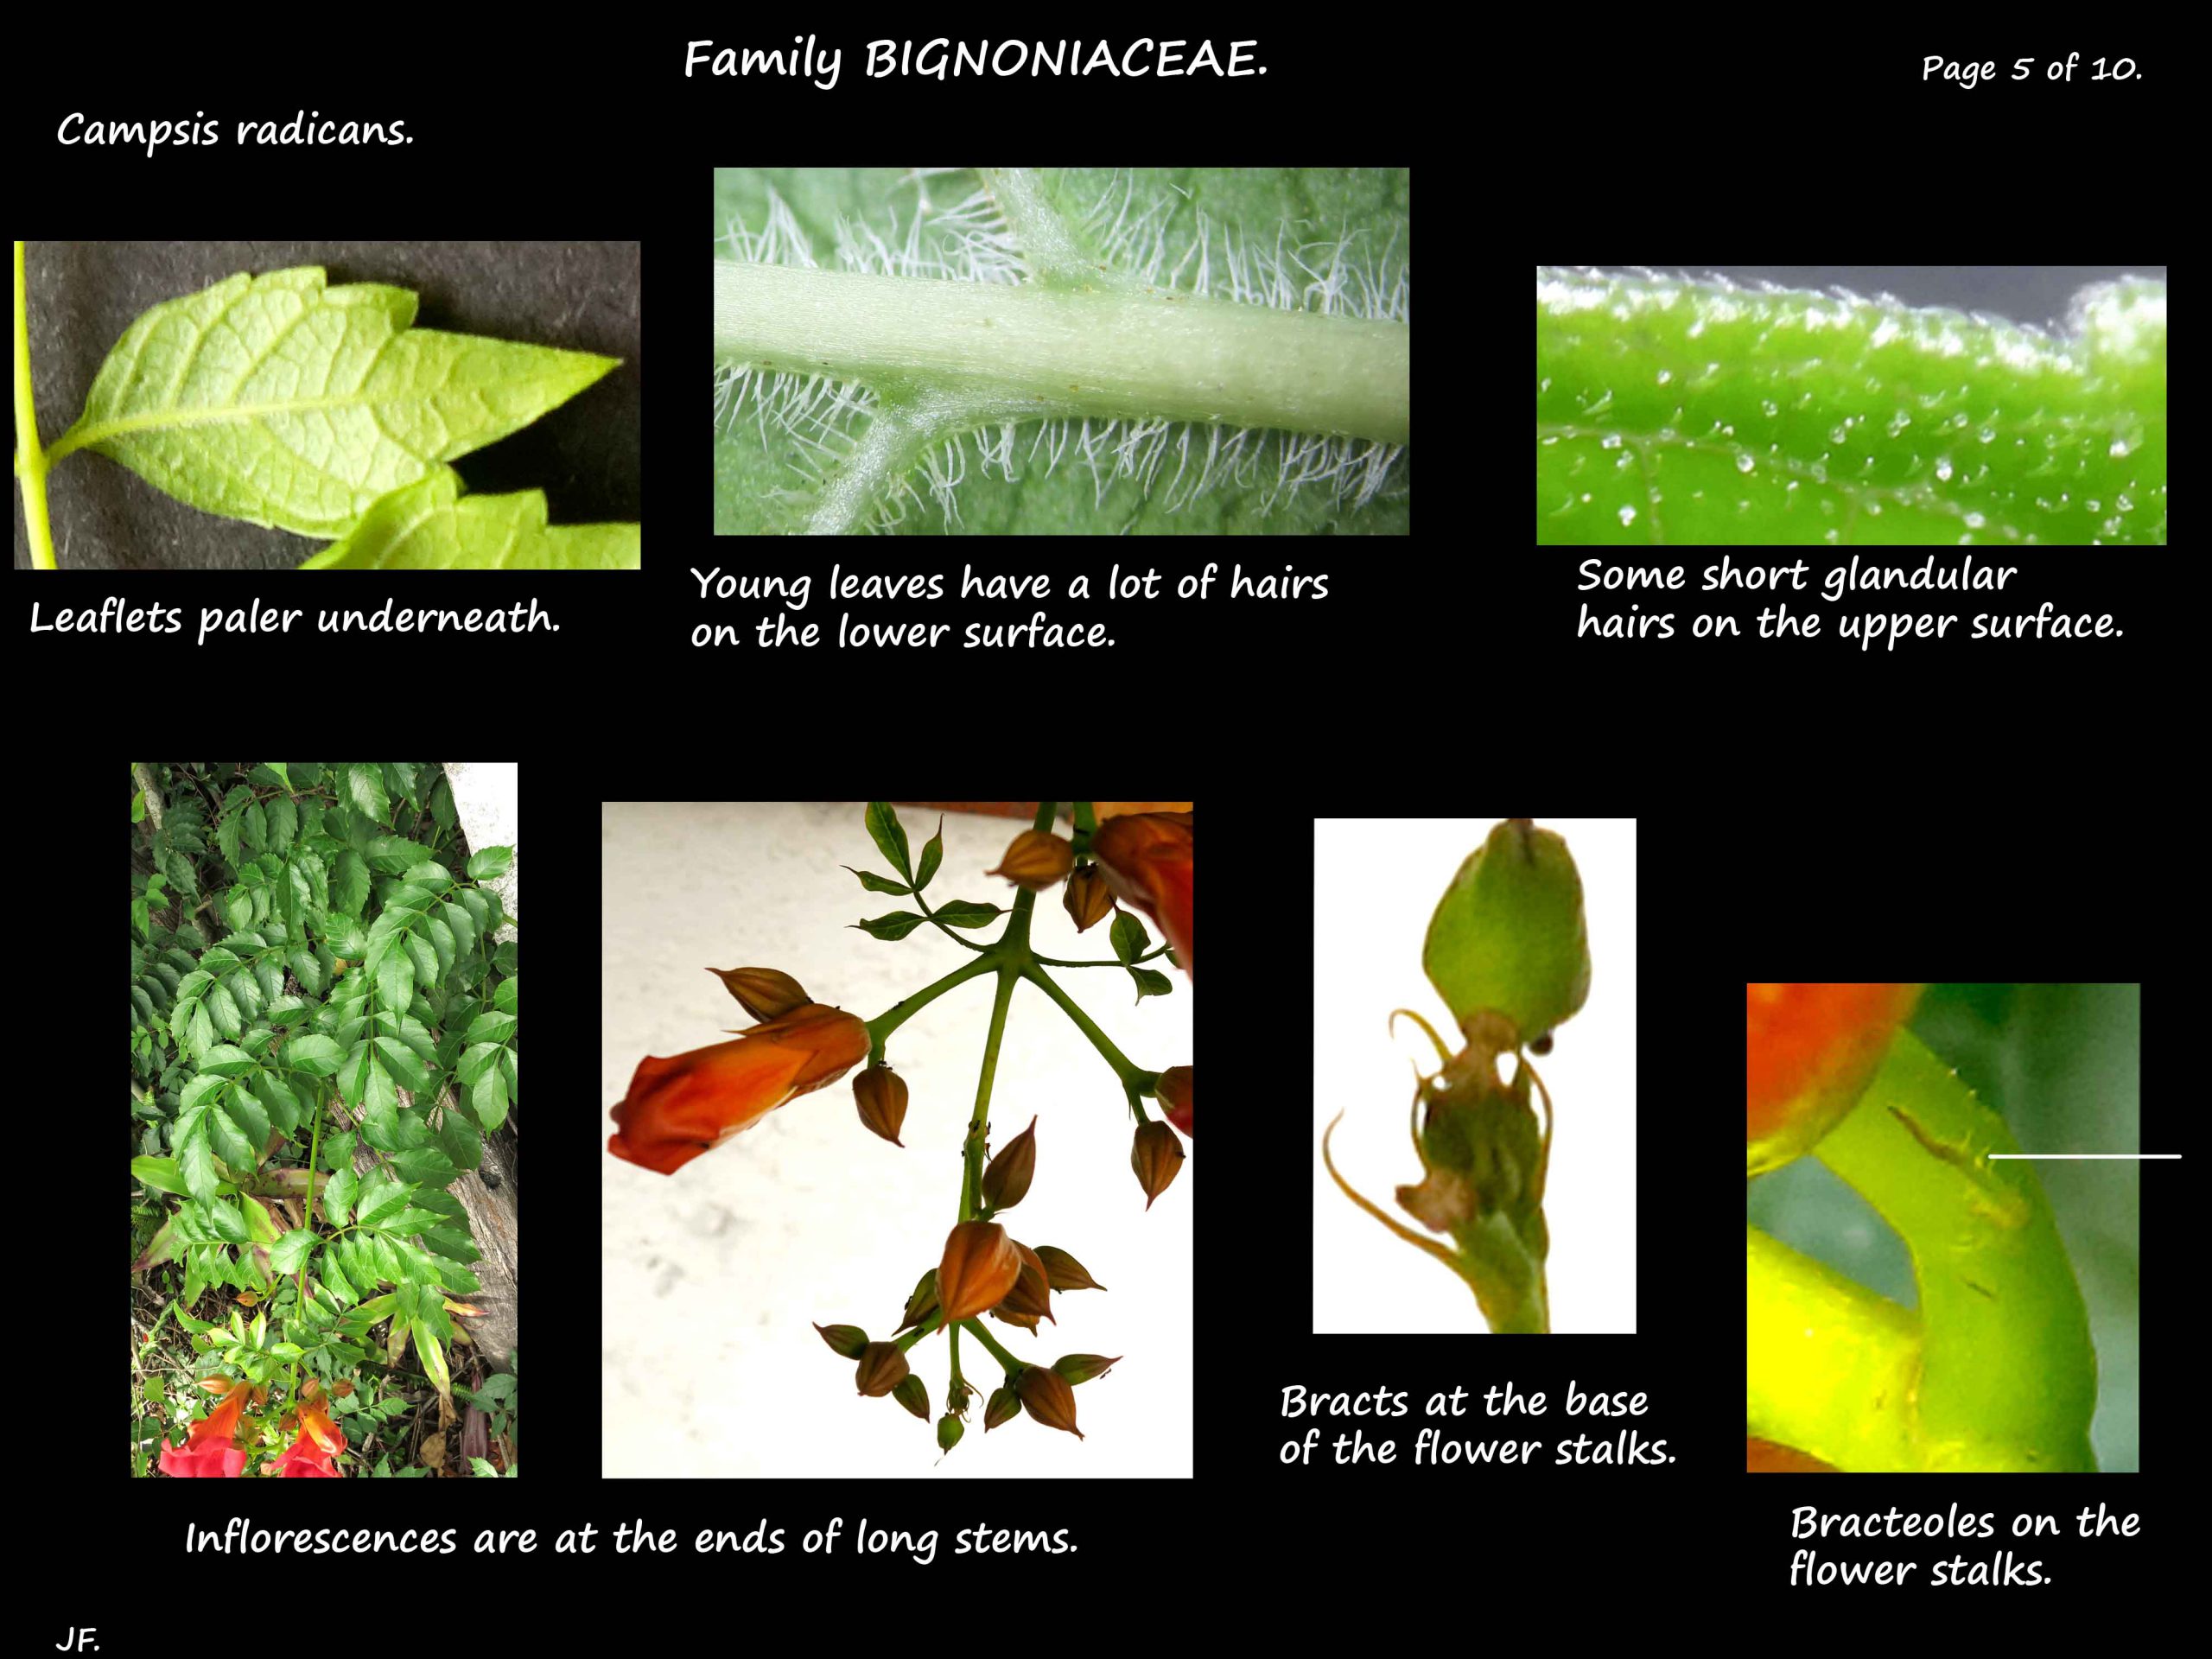 5 Campsis radicans leaf hairs